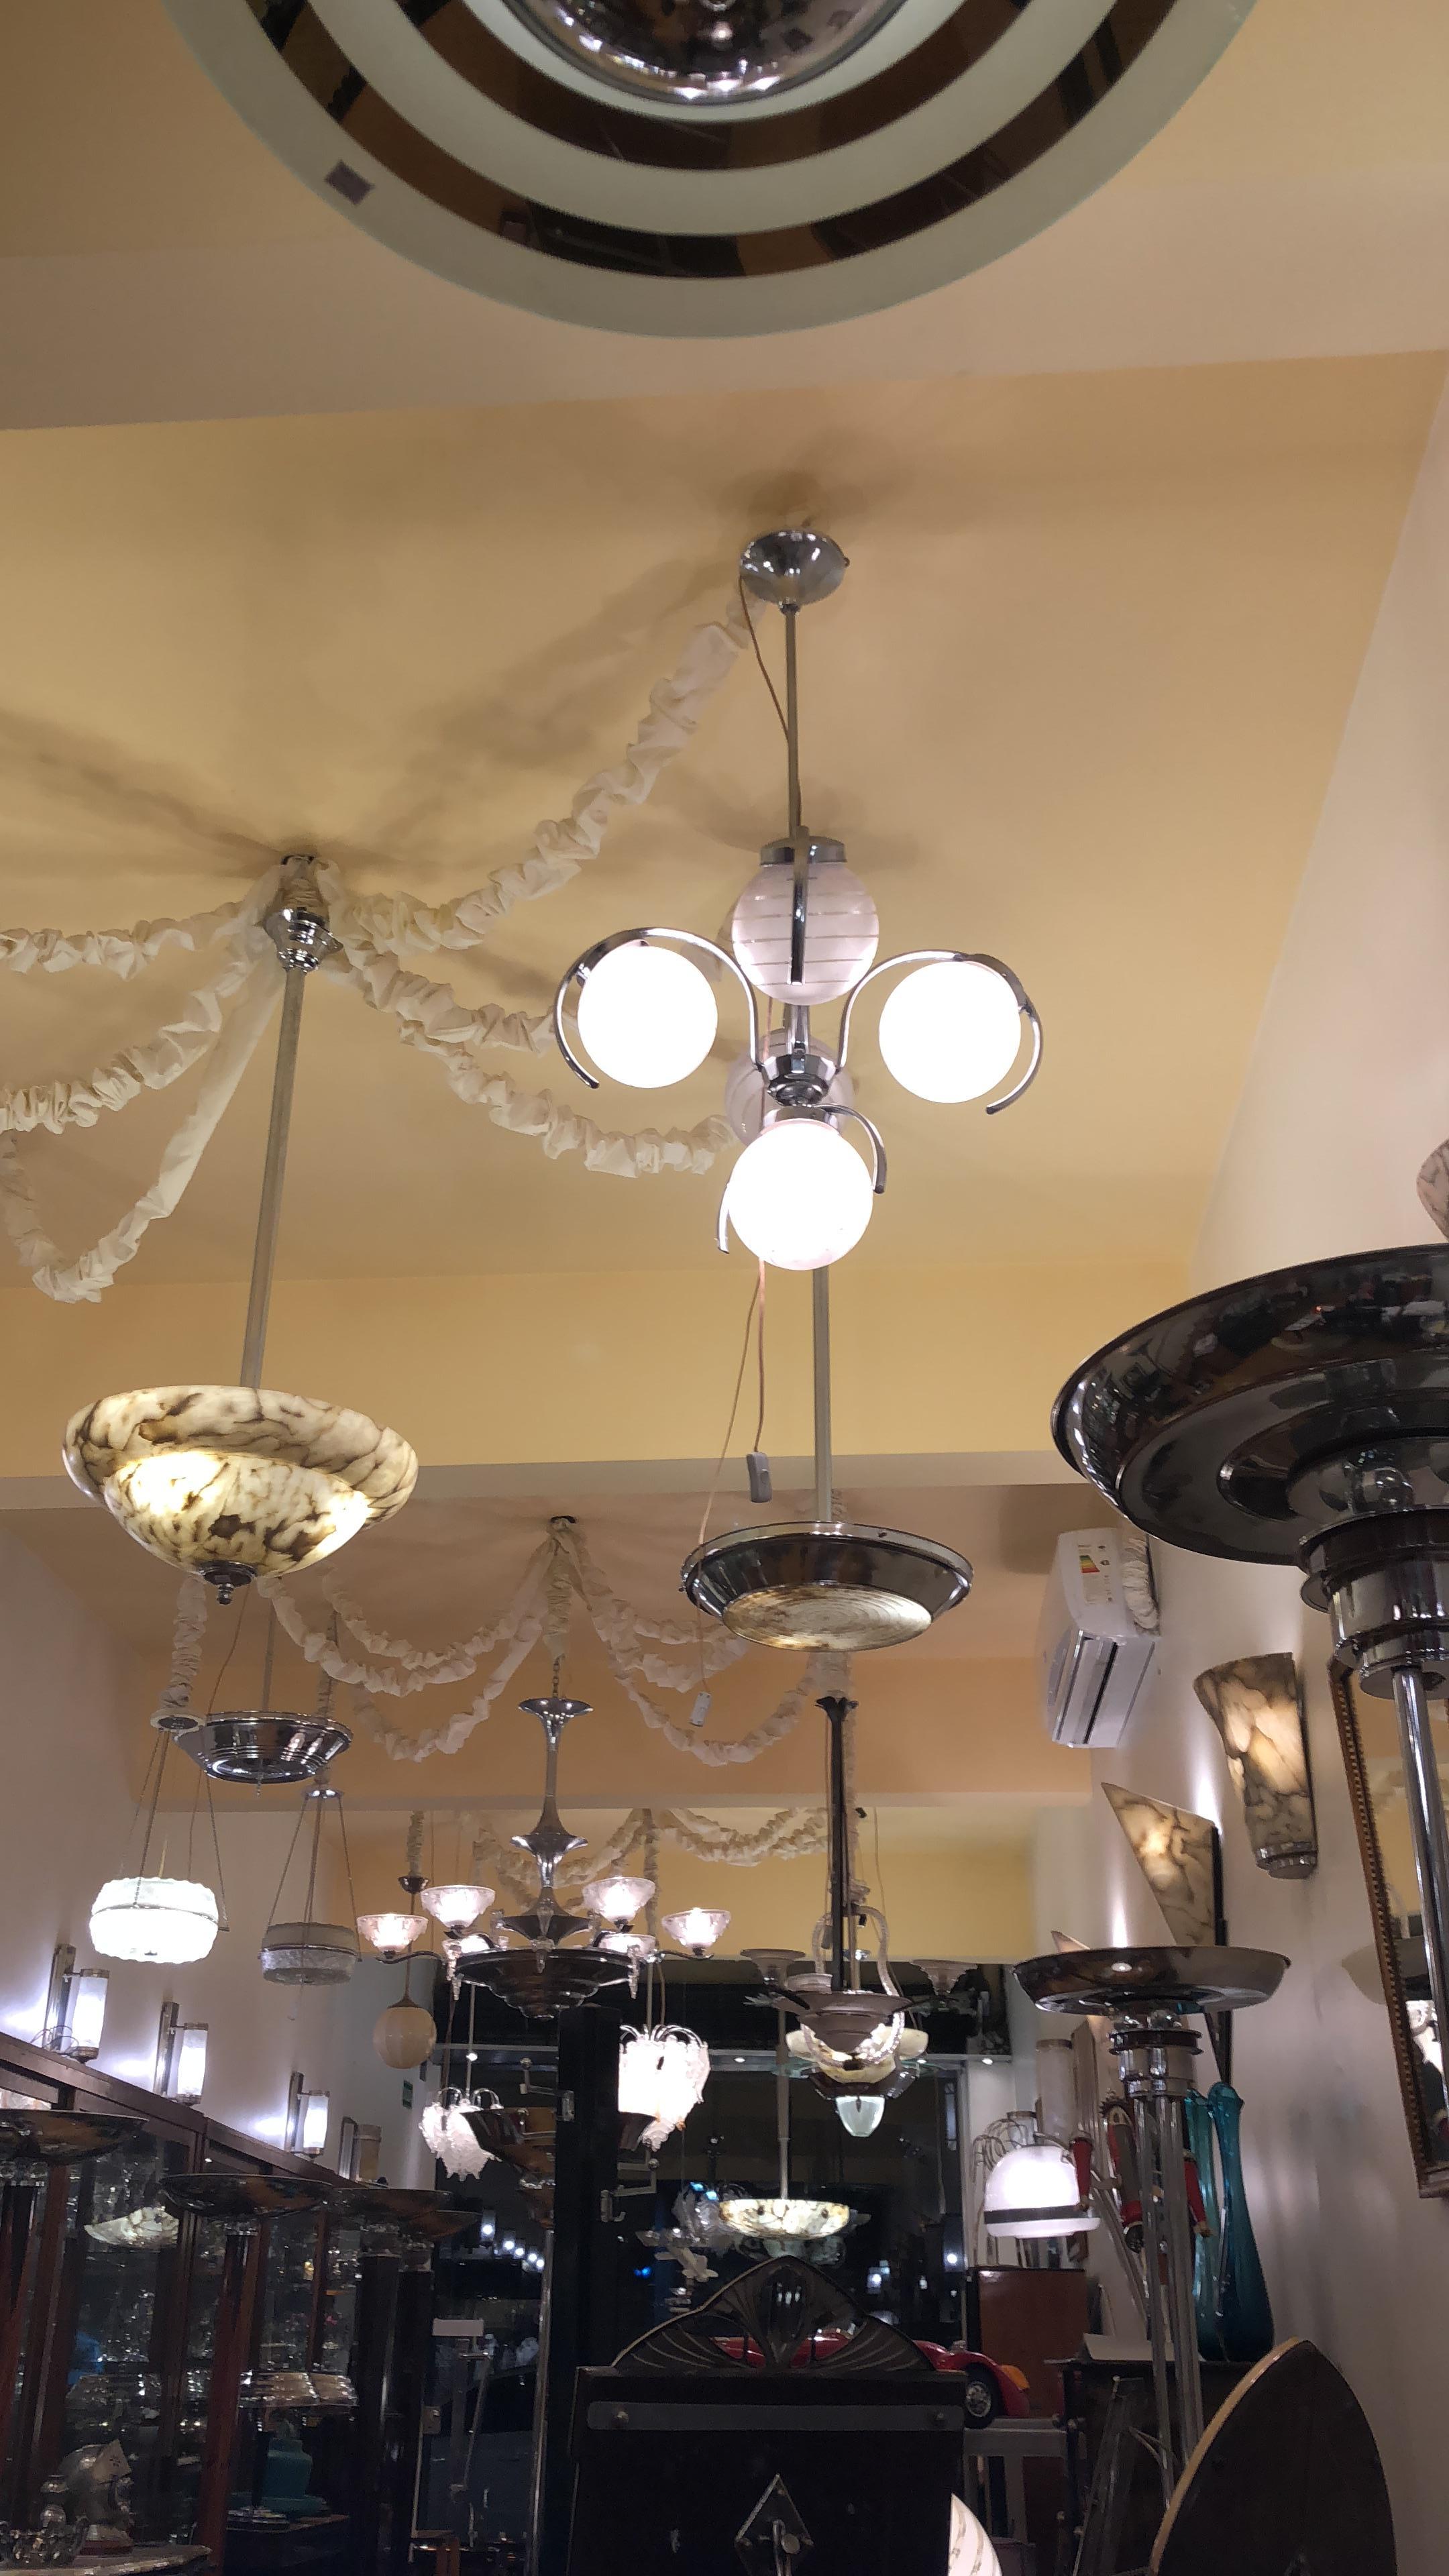 Stil: Art Deco
Jahr: 1935
MATERIAL: Alabaster und Chrom.
Zu Ihrer Sicherheit und der Ihres Eigentums sind alle unsere Leuchten mit neuen Stromkabeln ausgestattet. Wir denken immer an unsere Kunden.
Wenn Sie Fragen haben, stehen wir Ihnen gerne zur